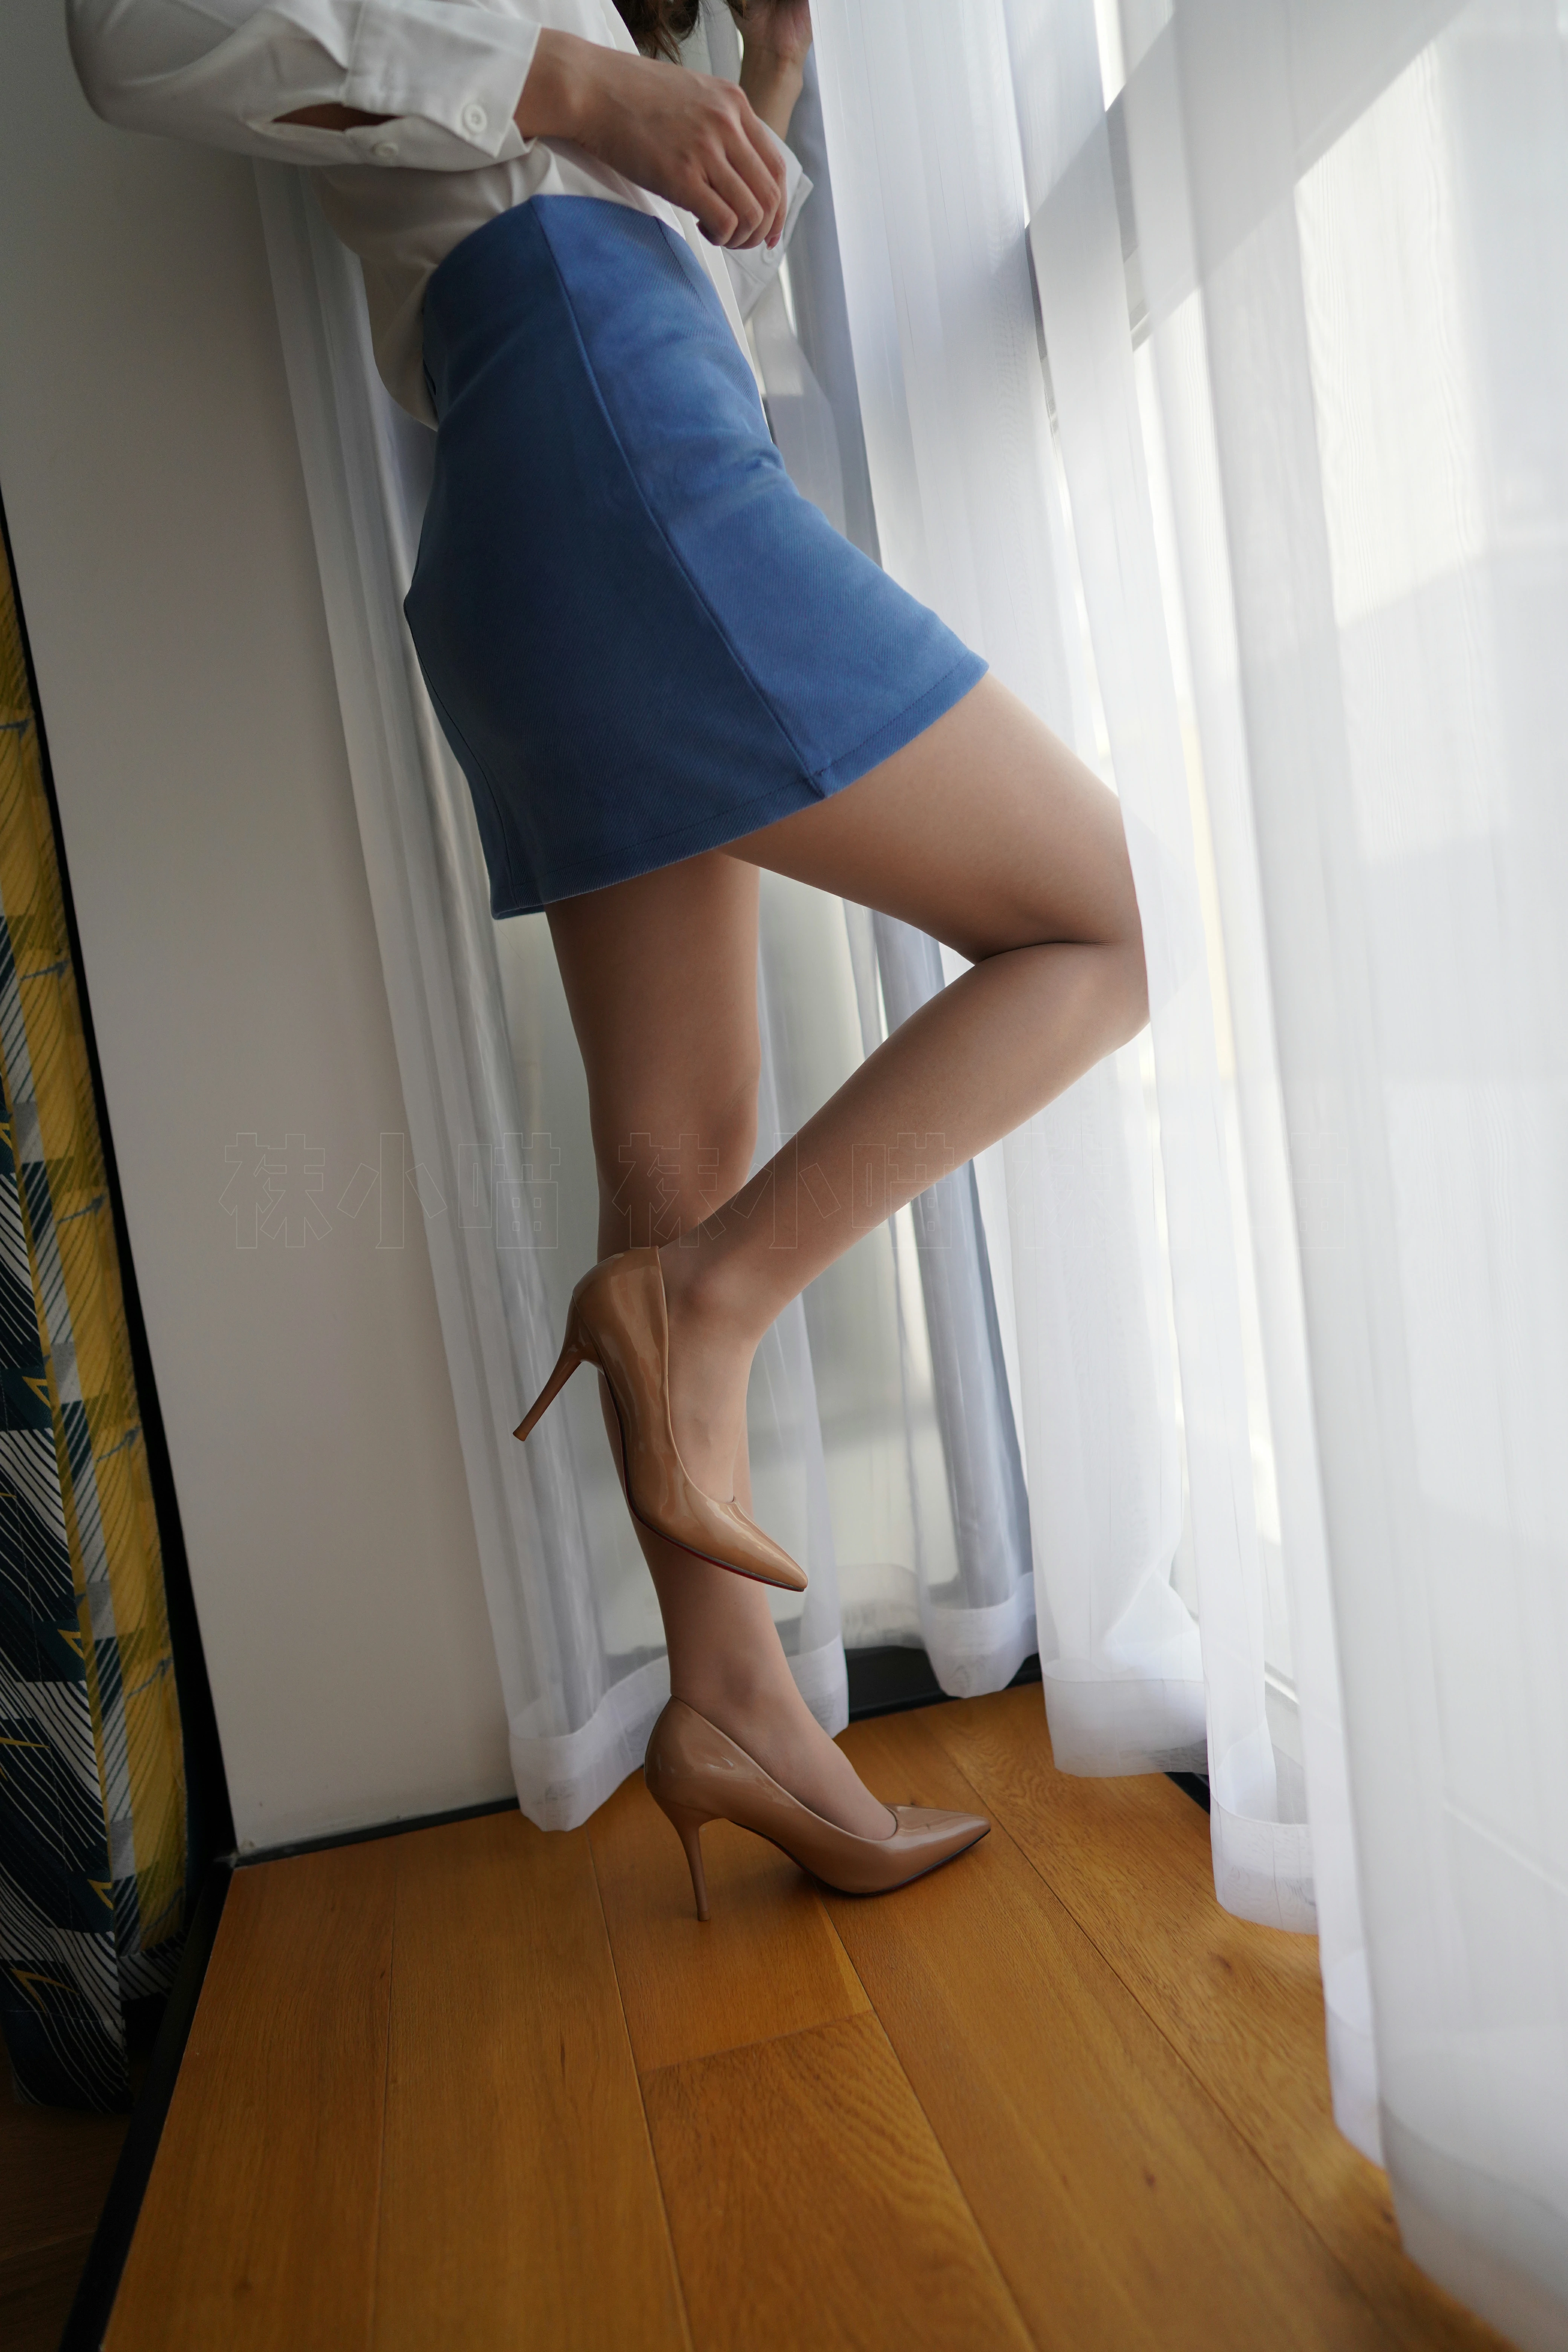 [壹吻映画]YW006《雅妍·天蓝裙》 白色透视衬衫与蓝色短裙加肉丝美腿私房写真集,